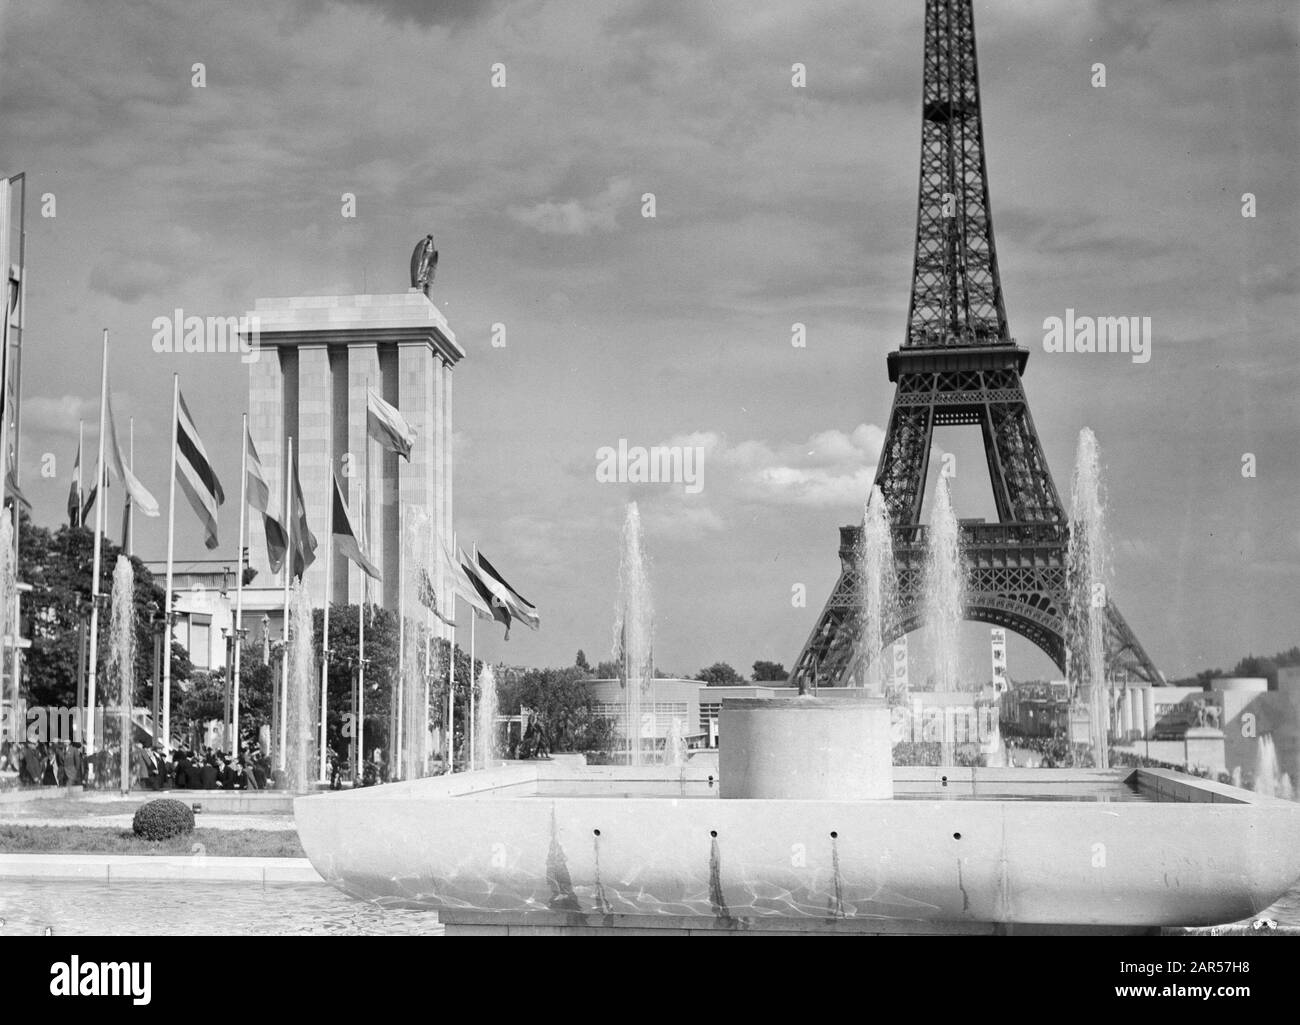 Exposition mondiale Paris 1937 le Pavillon allemand et la Tour Eiffel avec fontaine et fontaines et drapeaux Date : 1937 lieu : France, Paris mots clés : architecture, fontaines, tours, drapeaux, expositions mondiales Banque D'Images